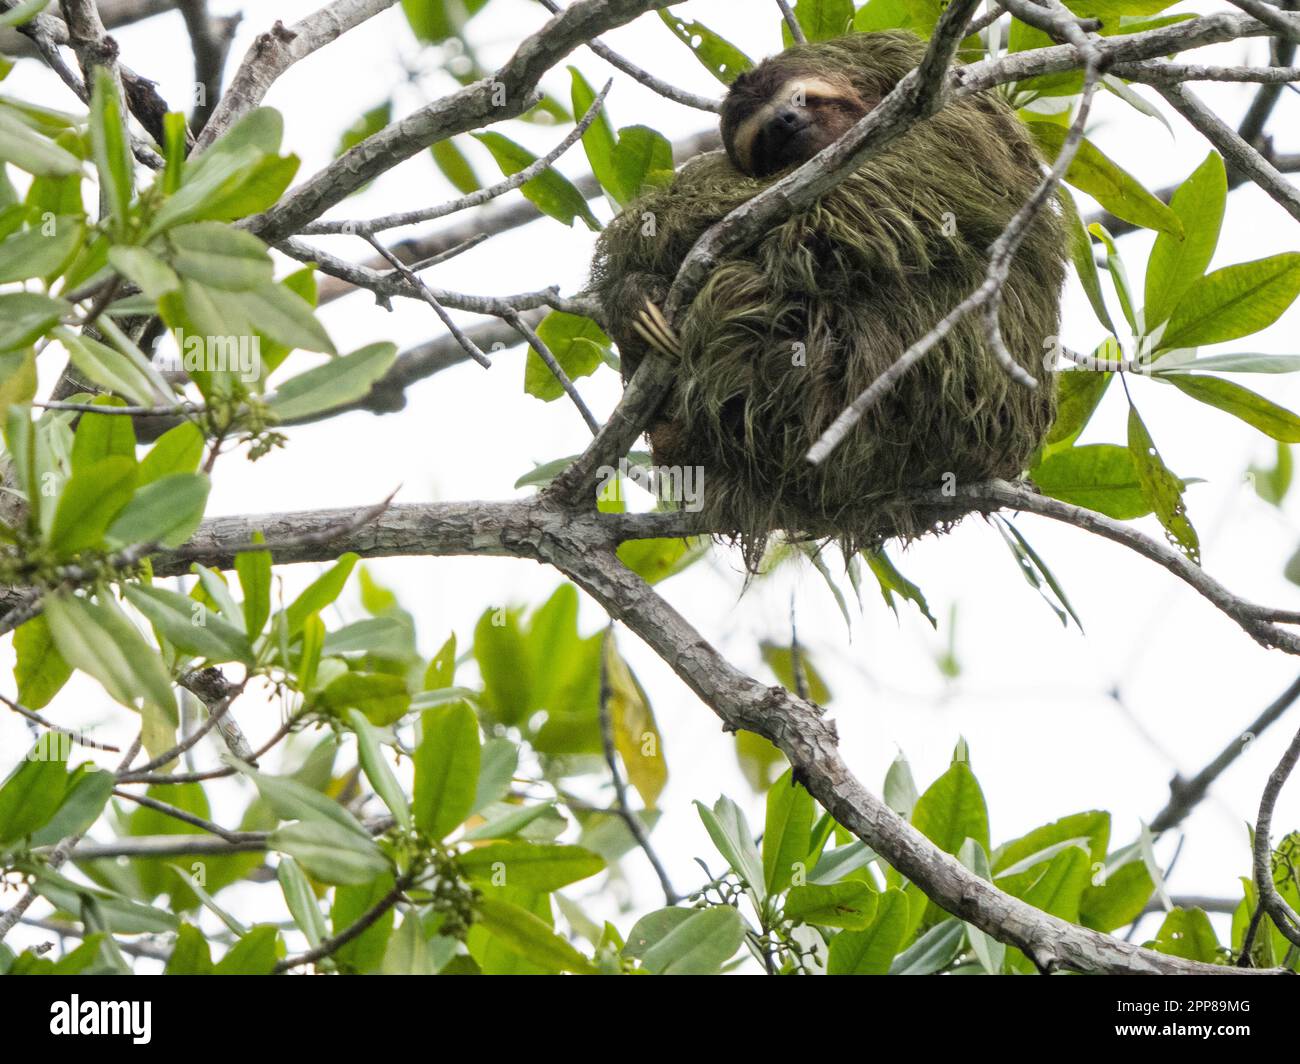 Paresseux à gorge brune (Bradypus variegatus), rivière Sierpe, Costa Rica Banque D'Images